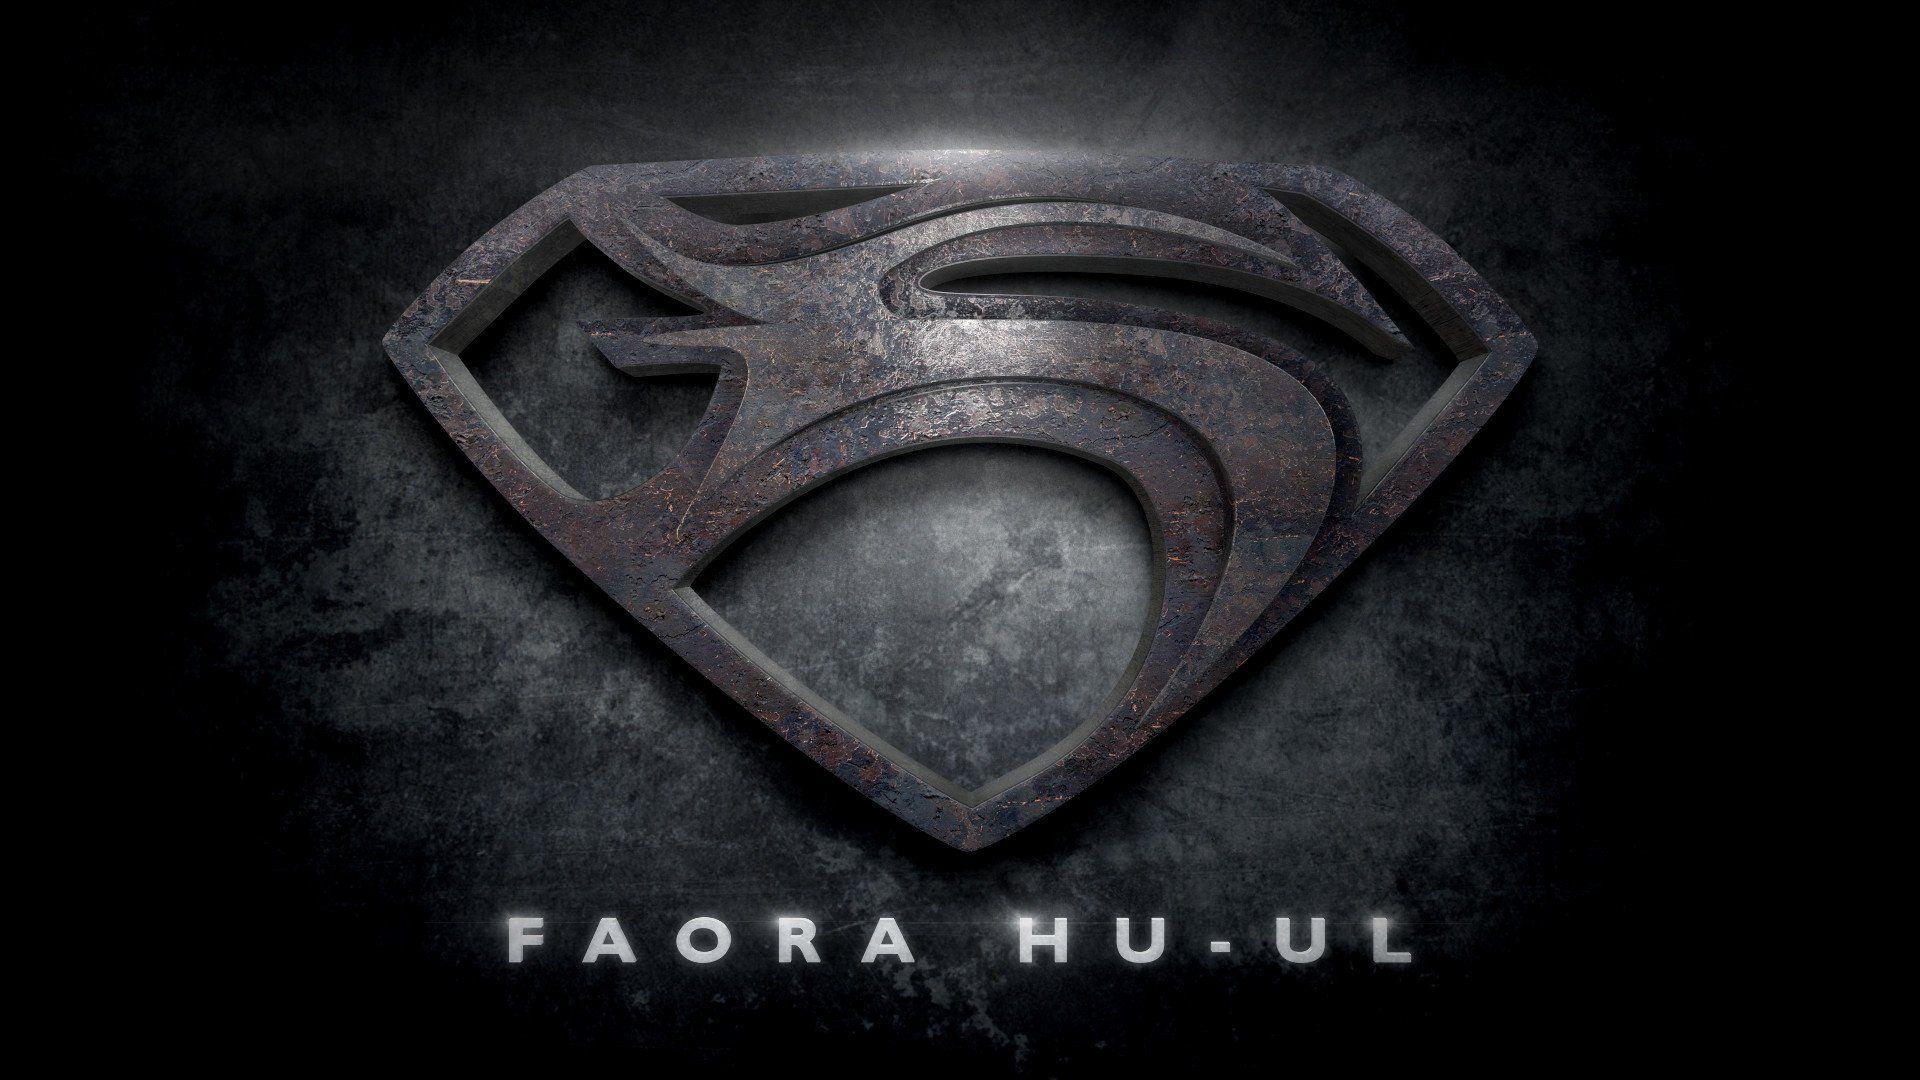 Zod Logo - Man of Steel Fan Art Gives Our Best Look Yet at Faora's Shield